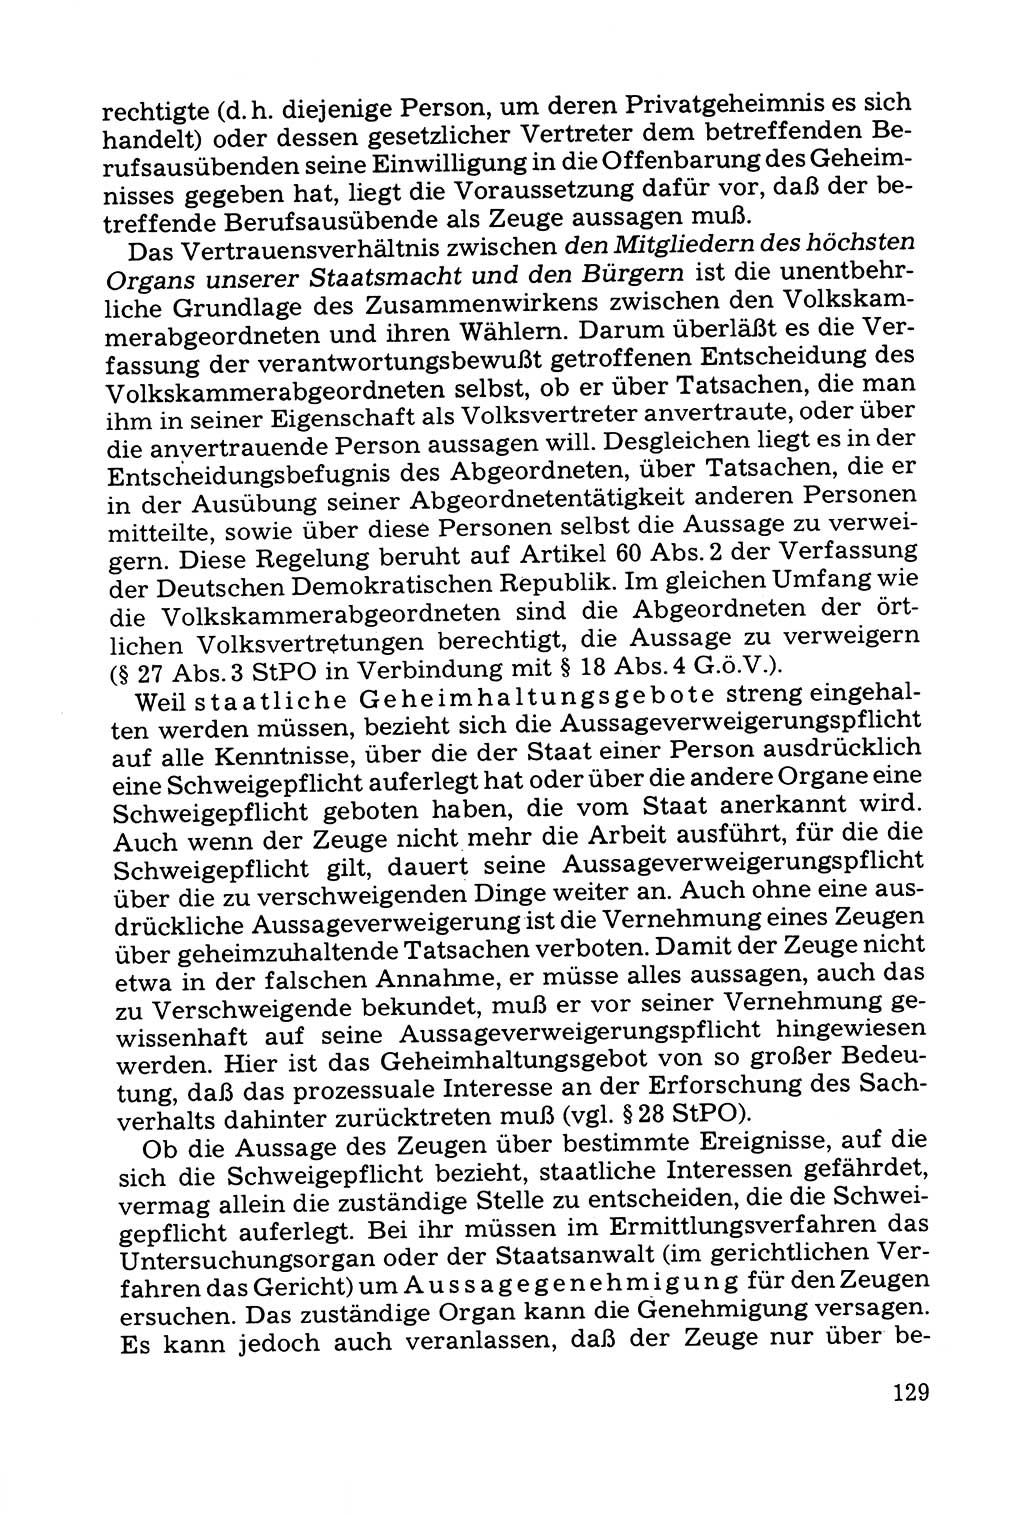 Grundfragen der Beweisführung im Ermittlungsverfahren [Deutsche Demokratische Republik (DDR)] 1980, Seite 129 (Bws.-Fhrg. EV DDR 1980, S. 129)